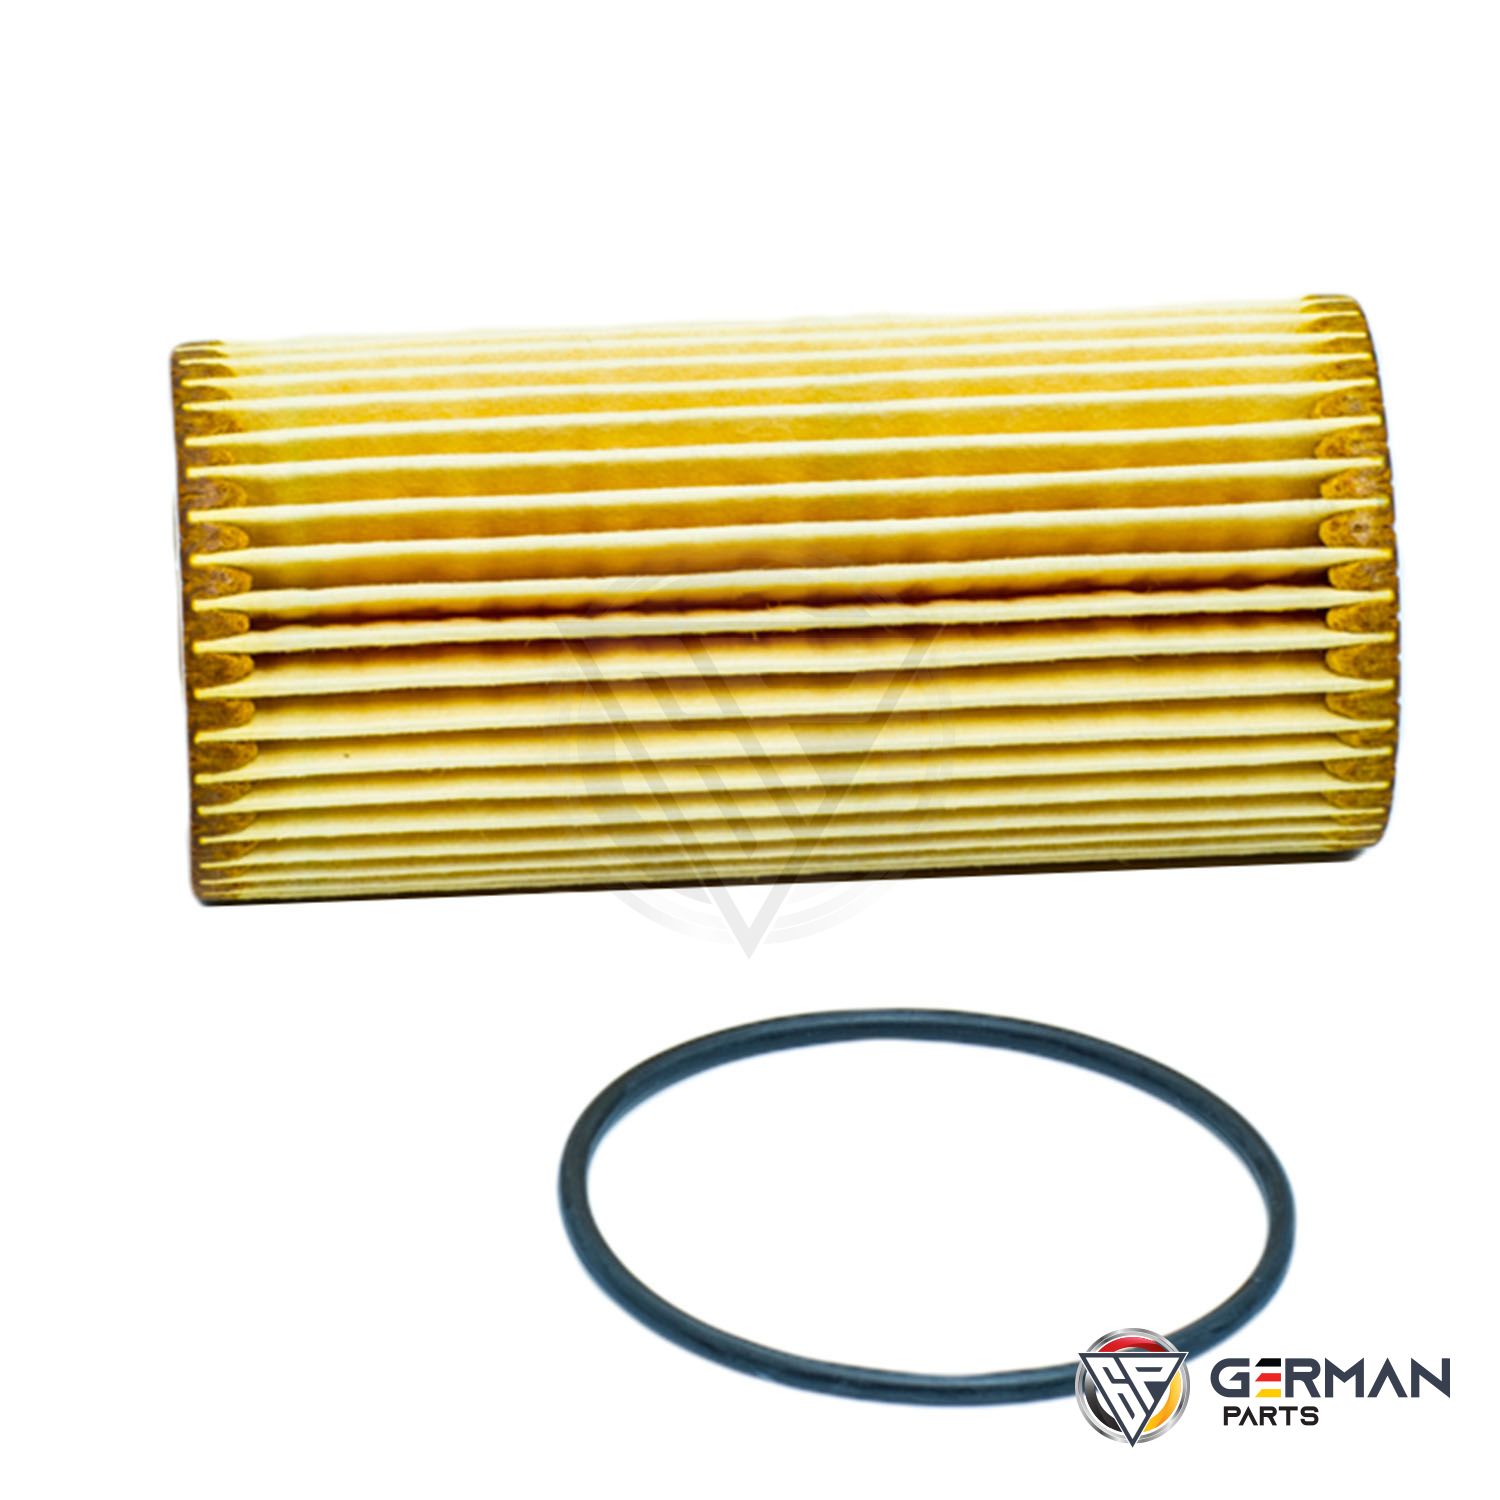 Buy Audi Volkswagen Oil Filter 06K115562 - German Parts